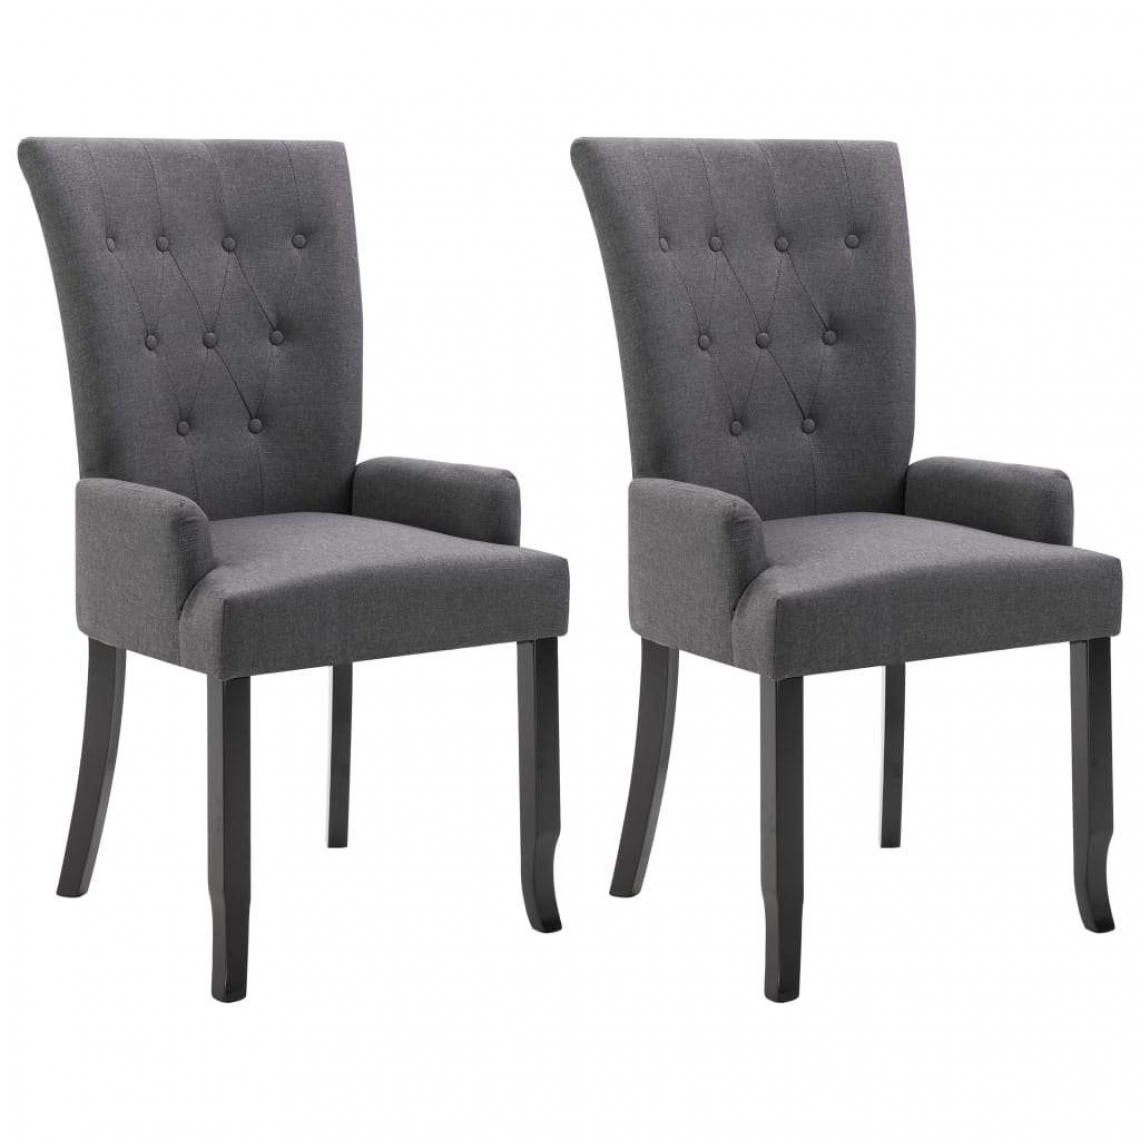 Decoshop26 - Lot de 2 chaises de salle à manger cuisine dossier capitonné en tissu gris foncé CDS021169 - Chaises